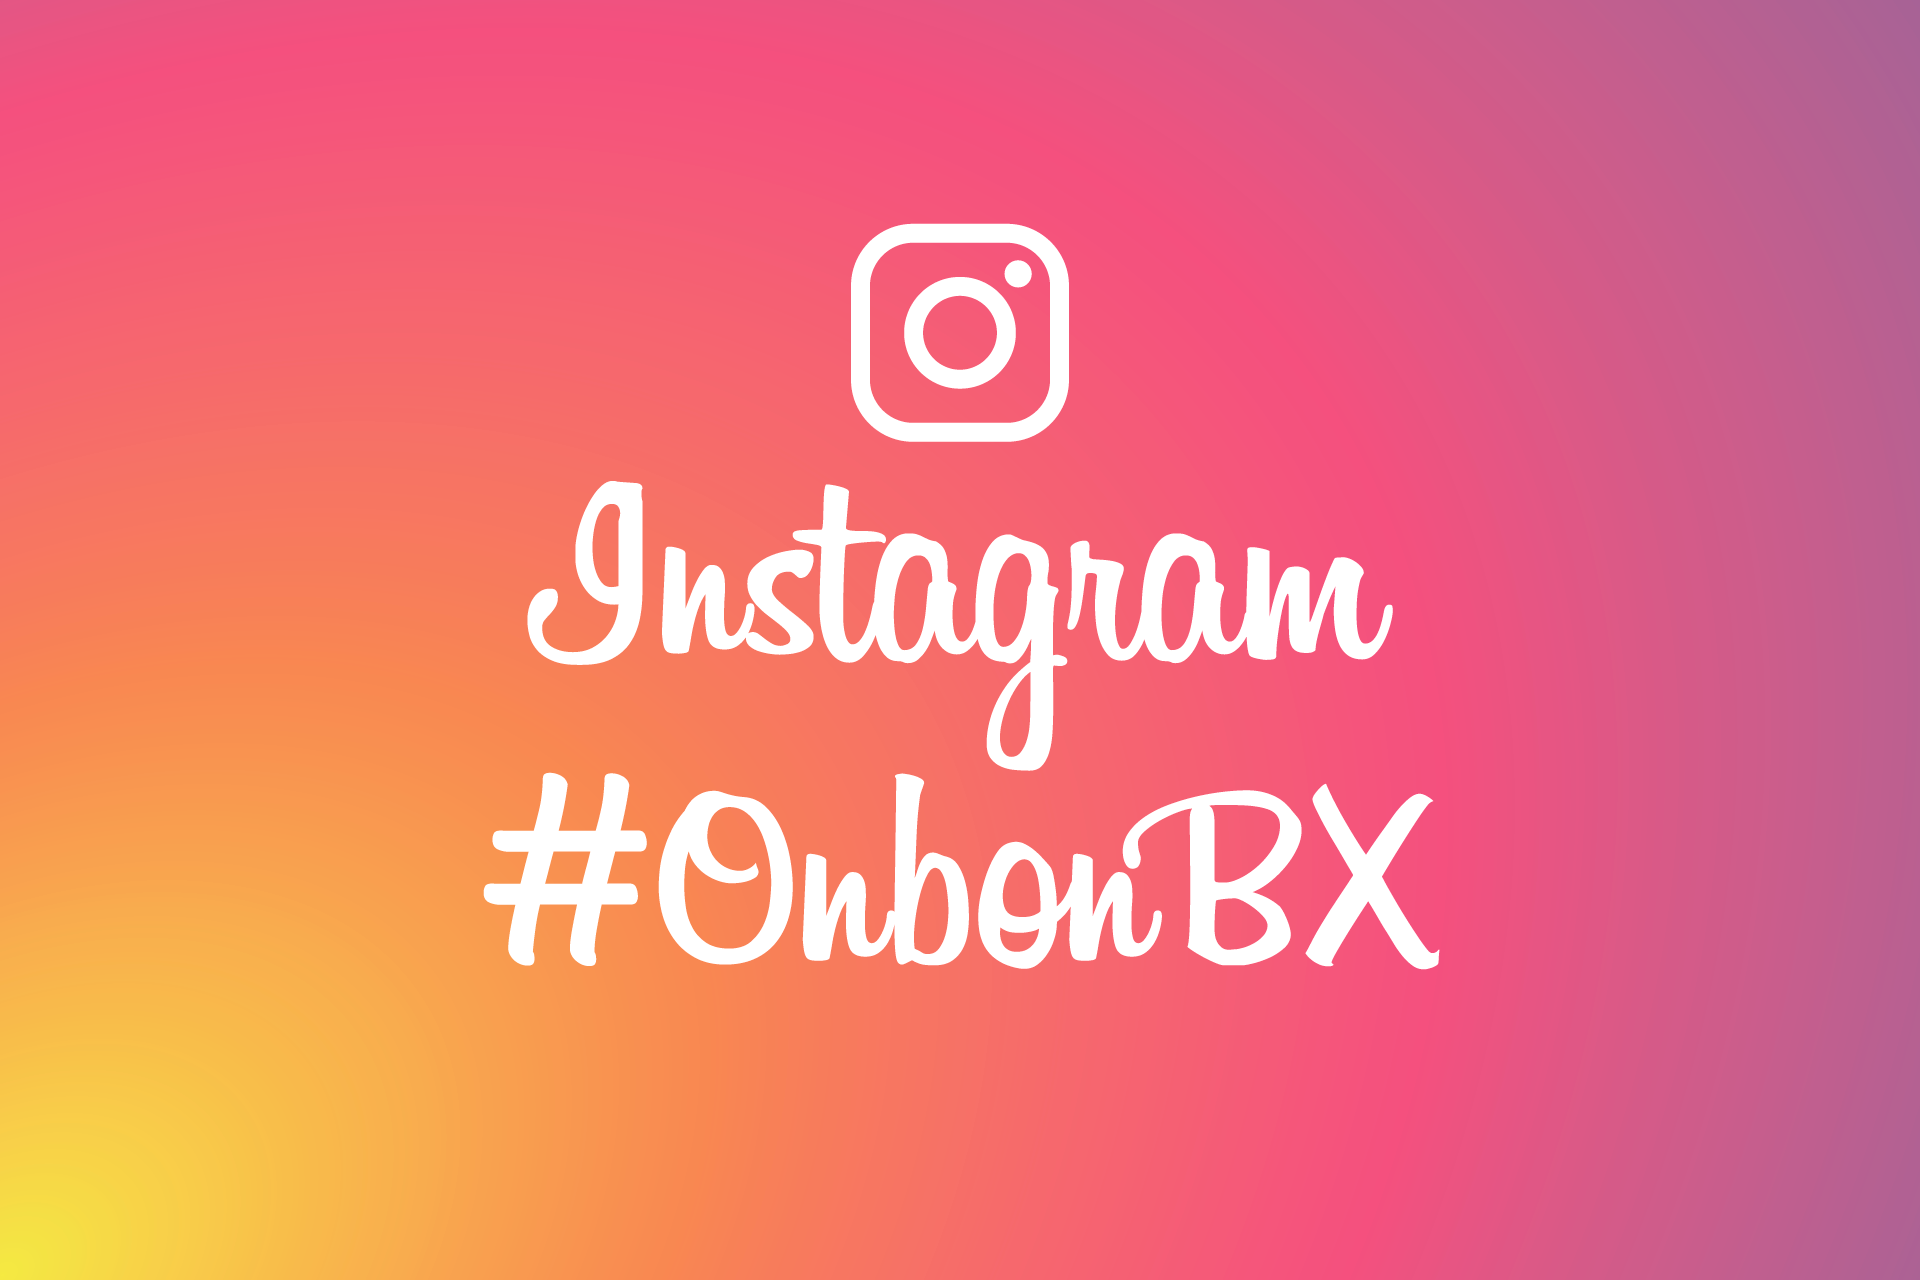 Instagram #OnbonBX